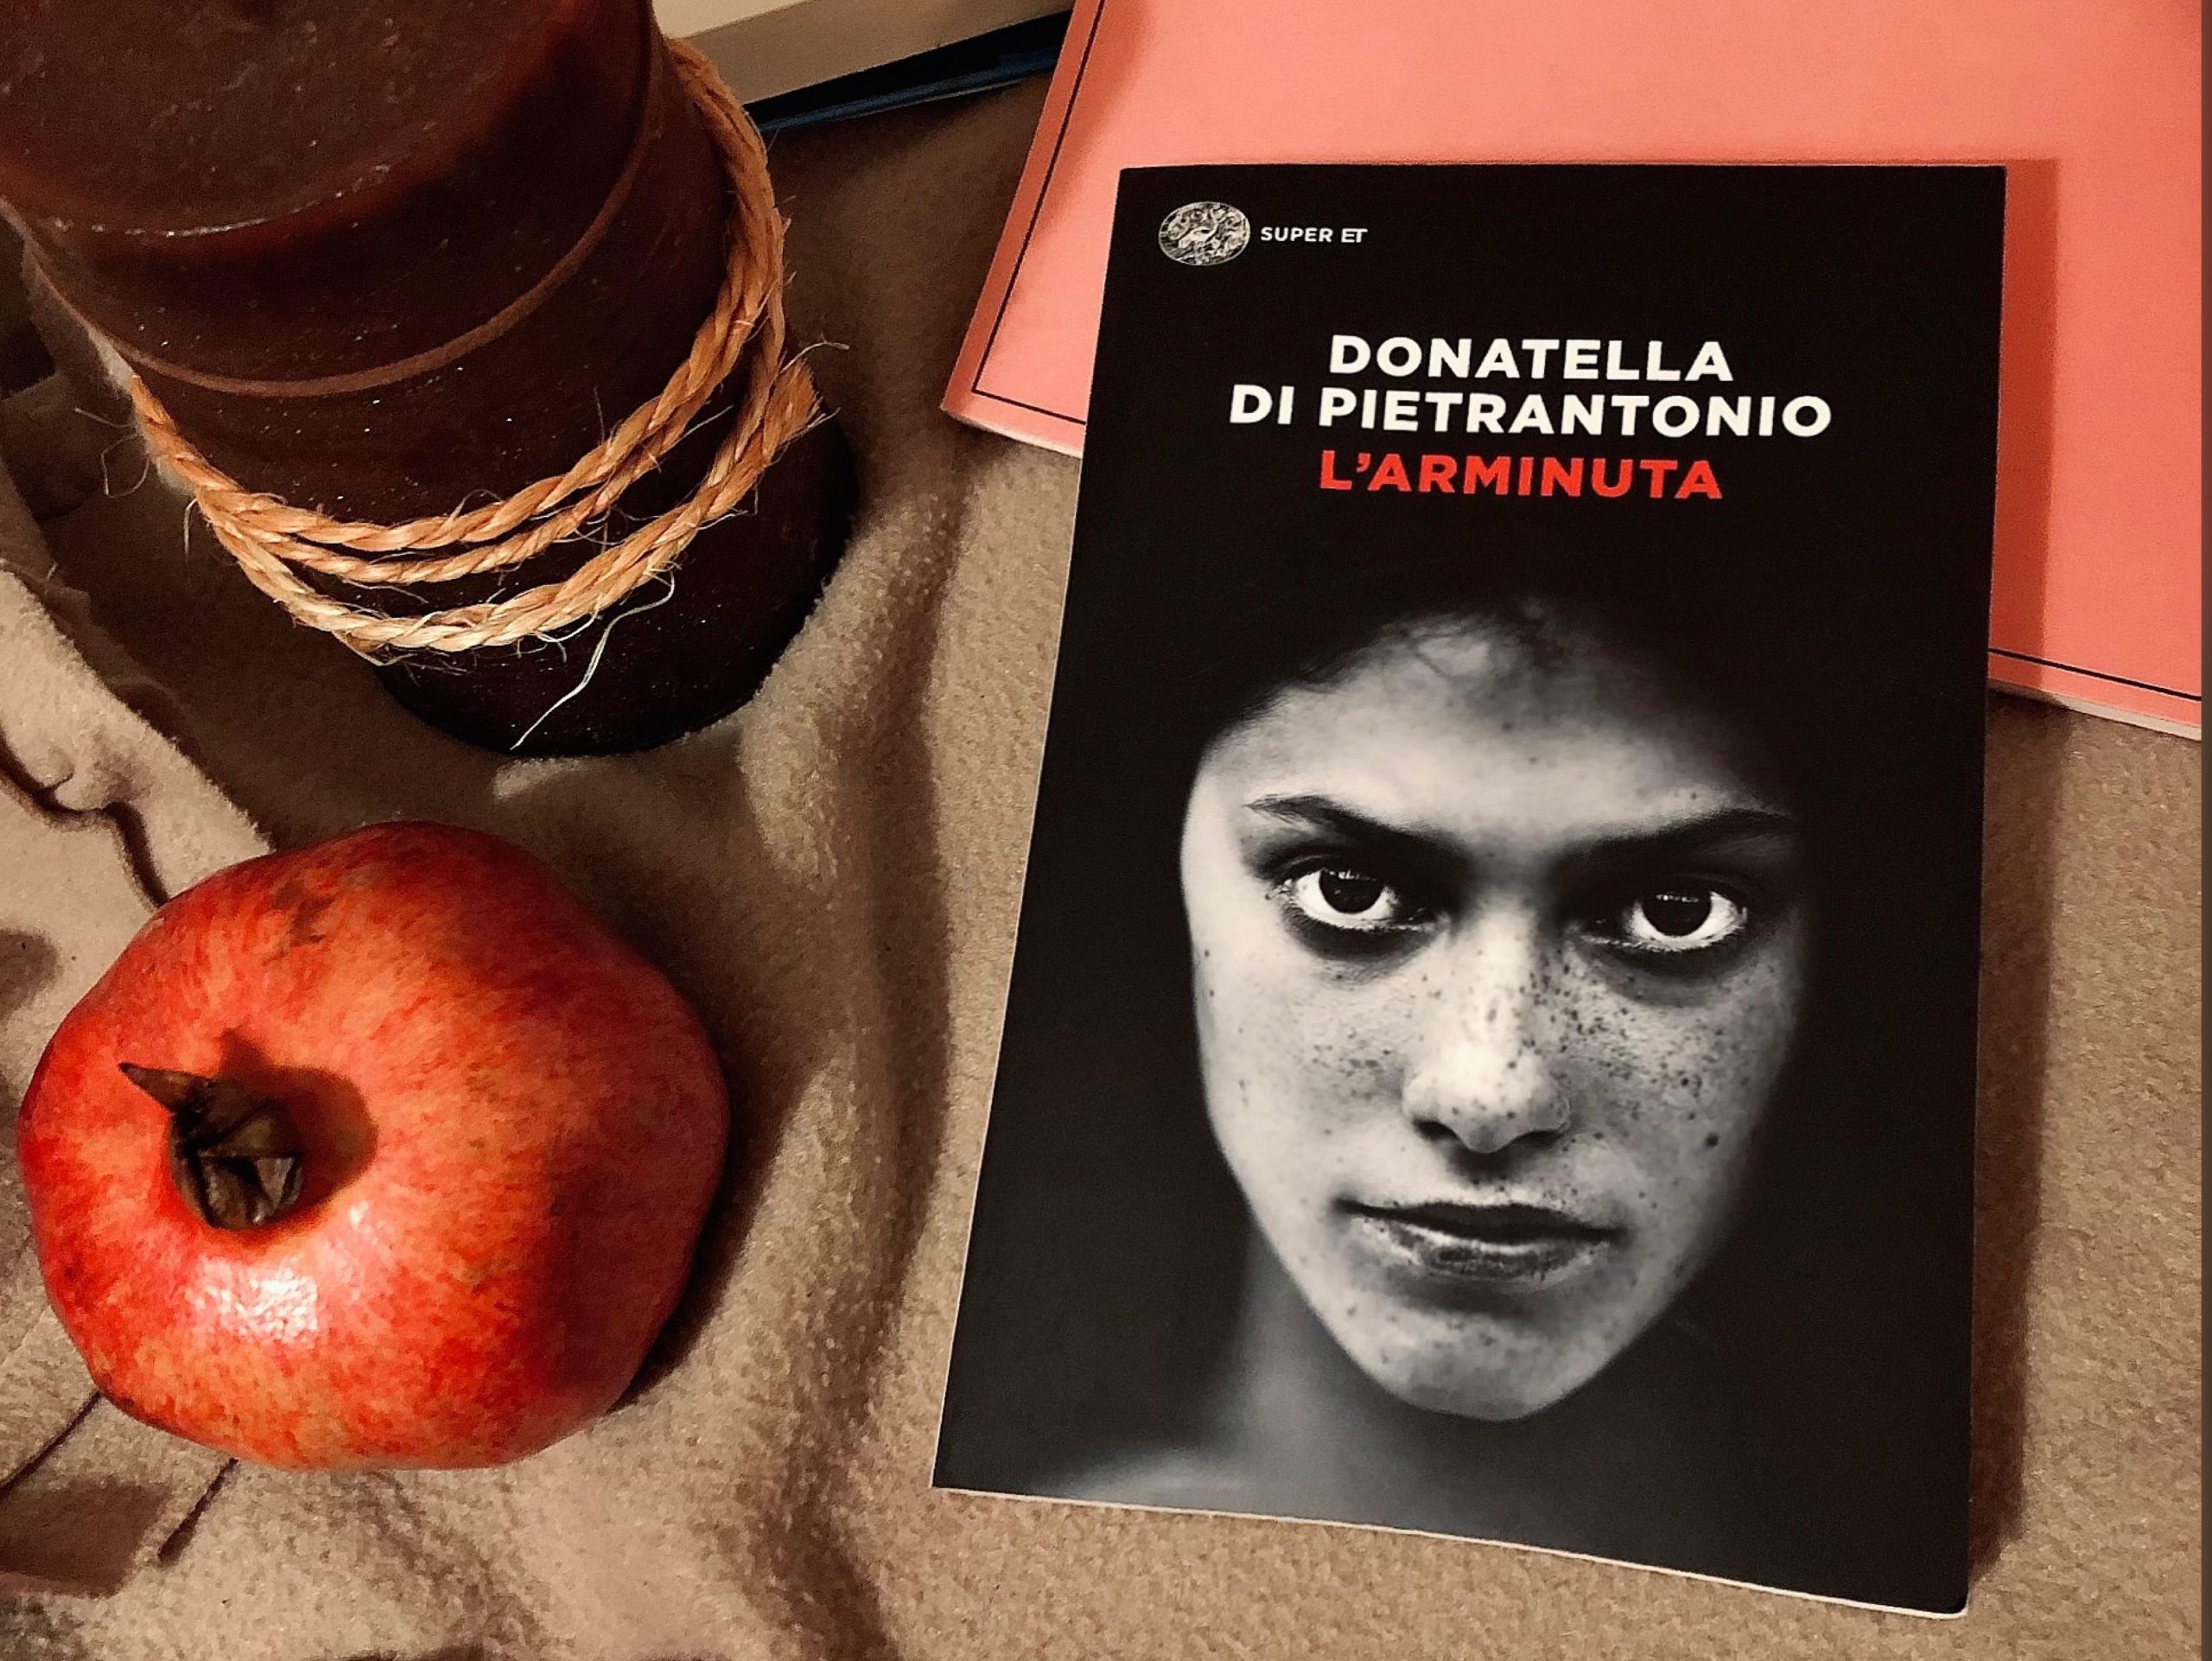 L'ARMINUTA - Donatella Di Pietrantonio - Marilena's Journal